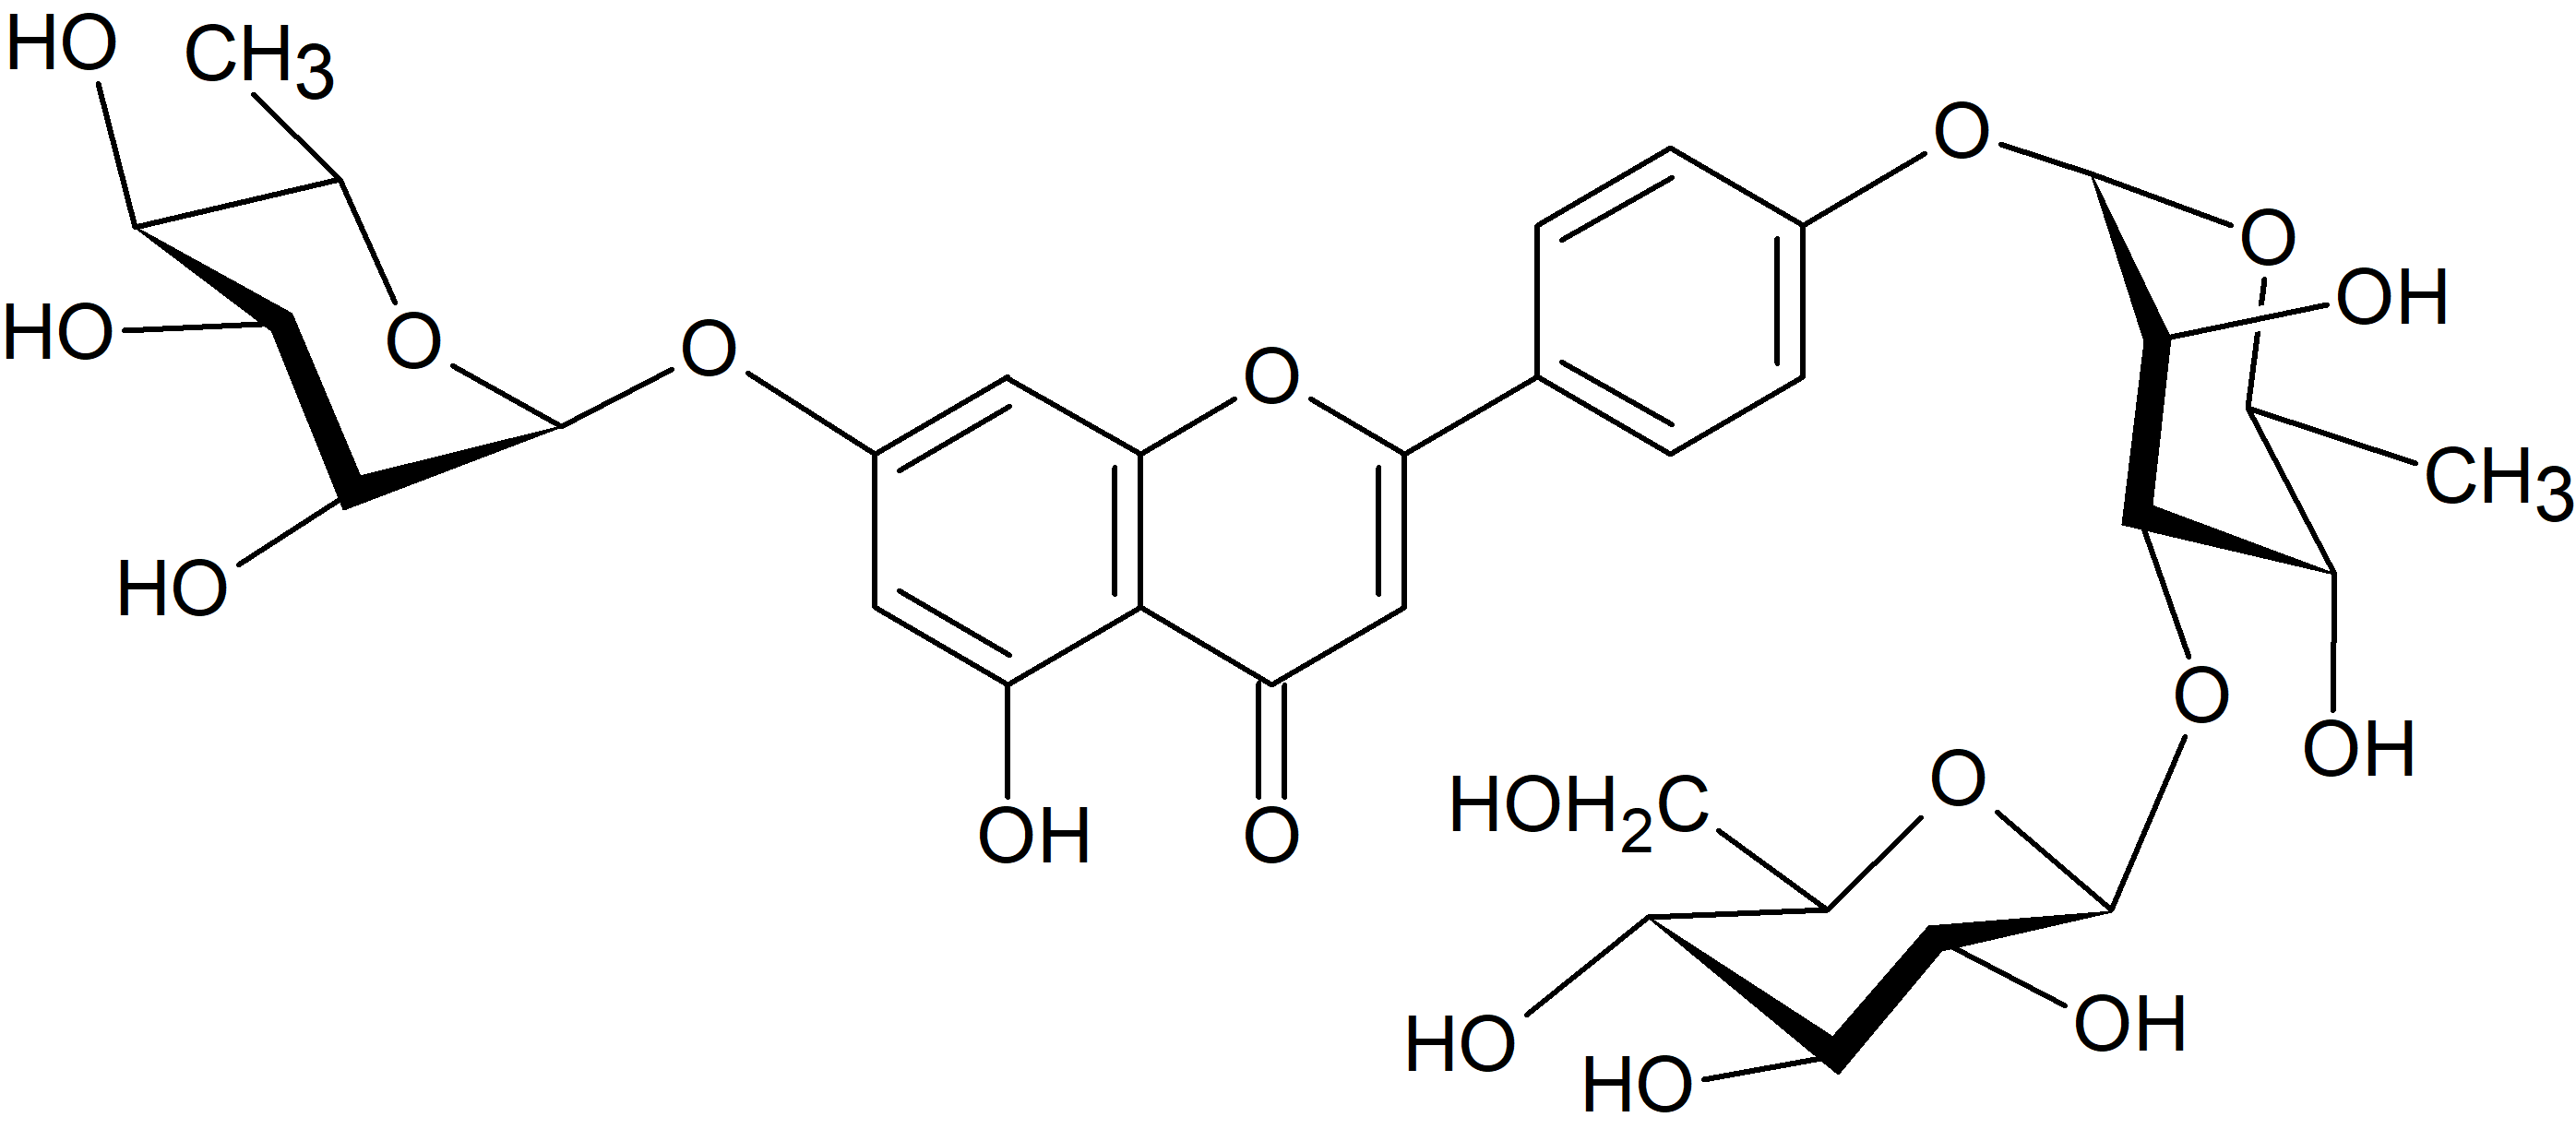 Apigenin 7-O-rhamnoside-4'-O-glucosyl-(1→3)-rhamnoside